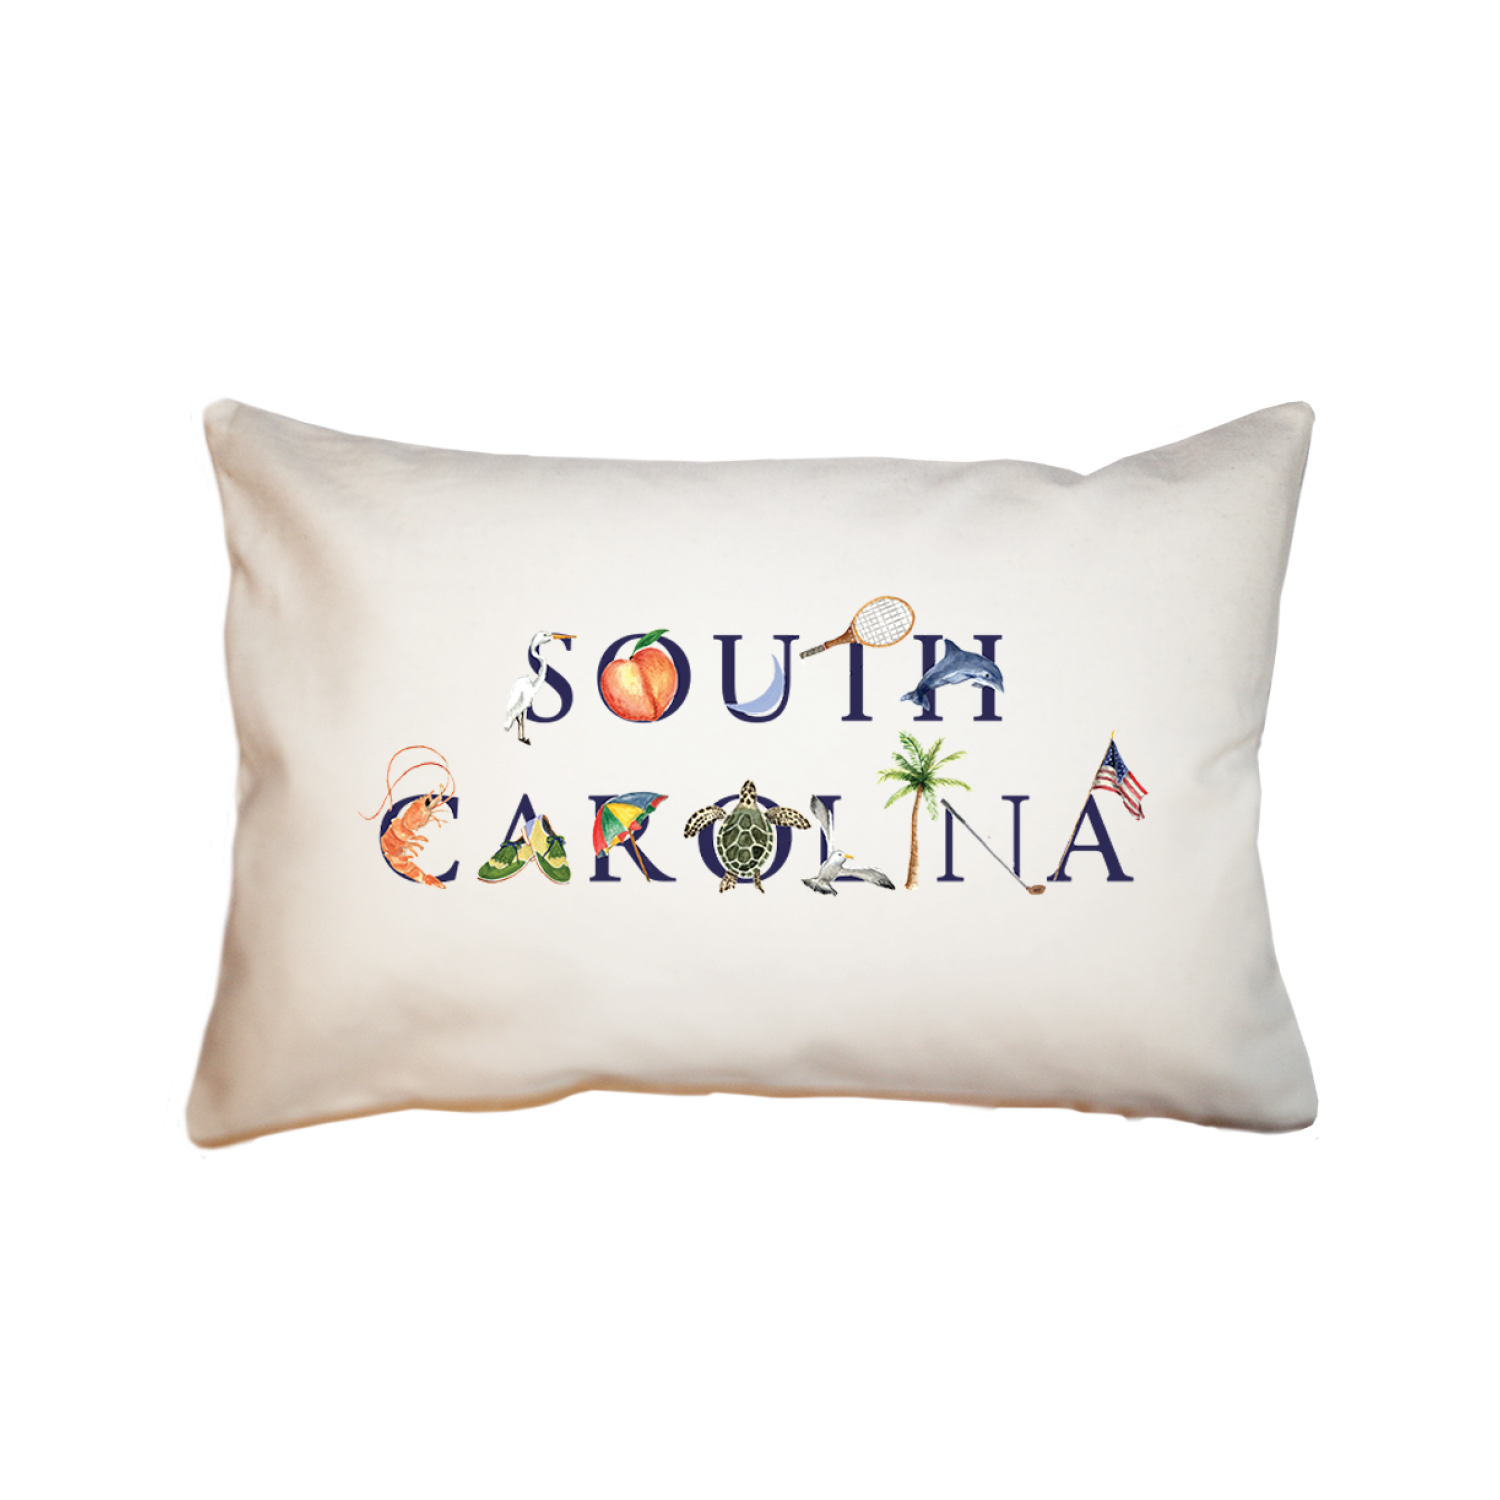 South Carolina large rectangle pillow